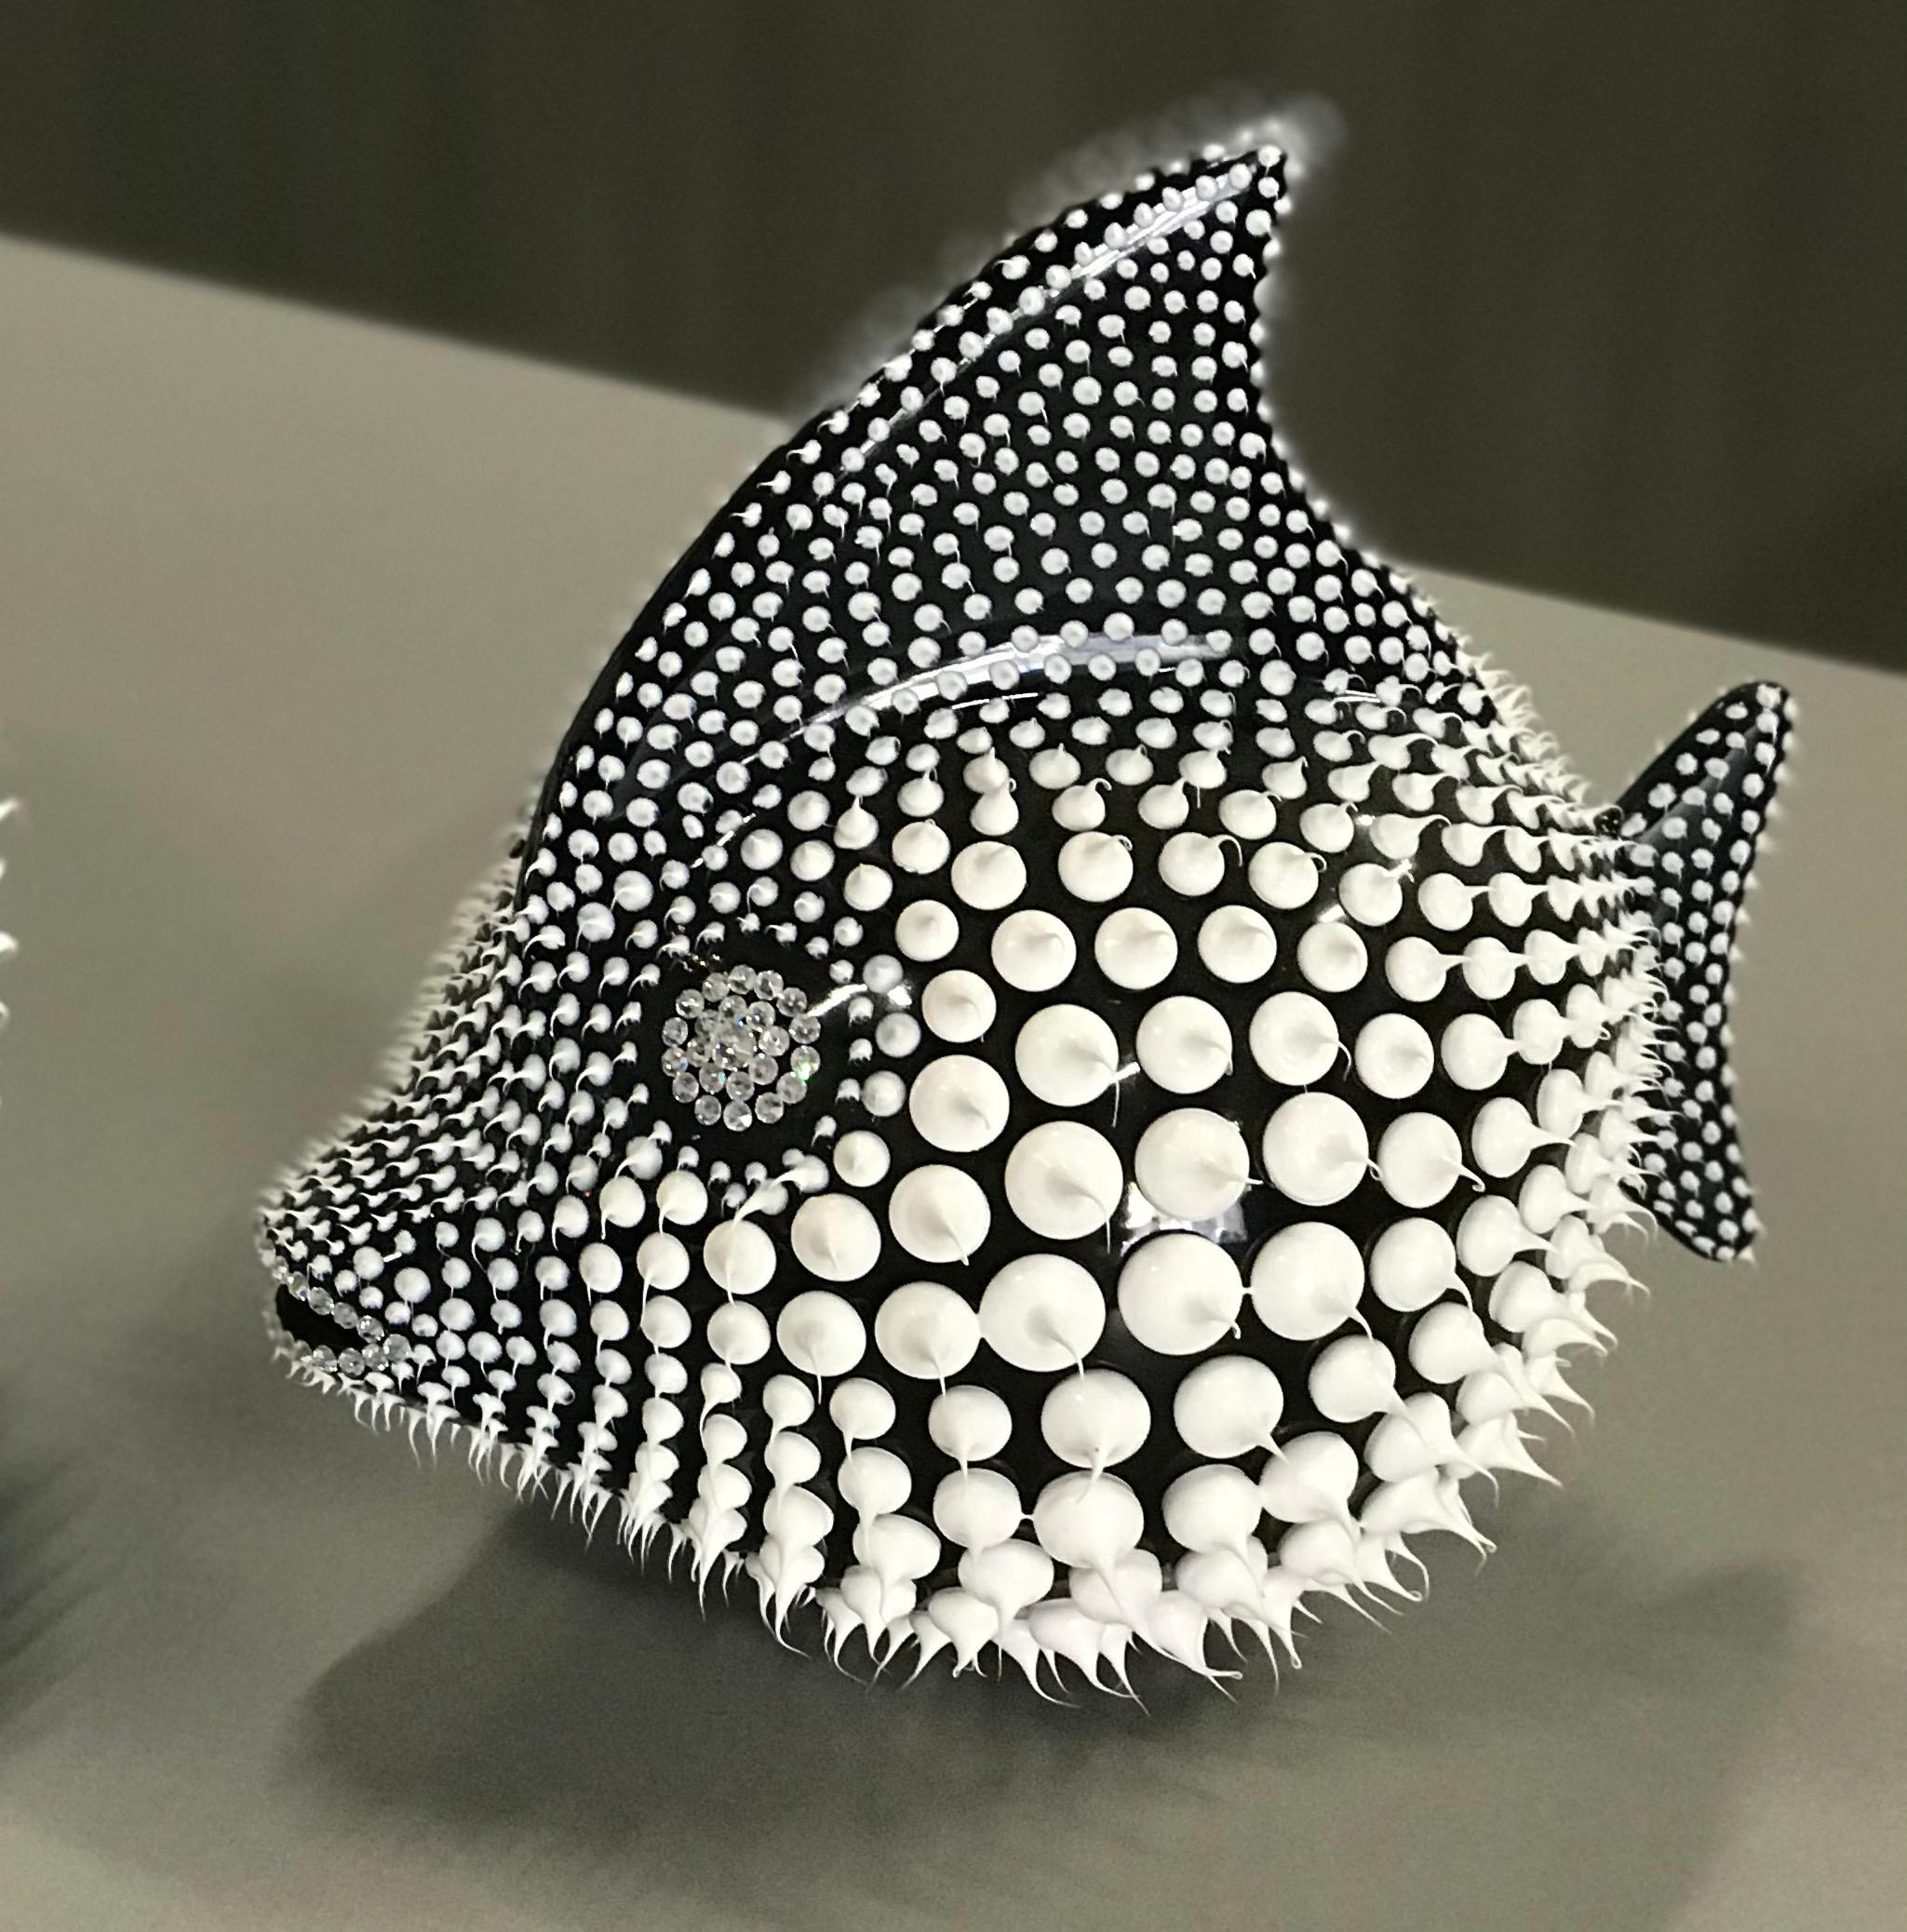 Eddy Maniez Figurative Sculpture - Eddie Maniez "Moonfish Medium" Sculpture French Ceramic Silicone Black Swarovski